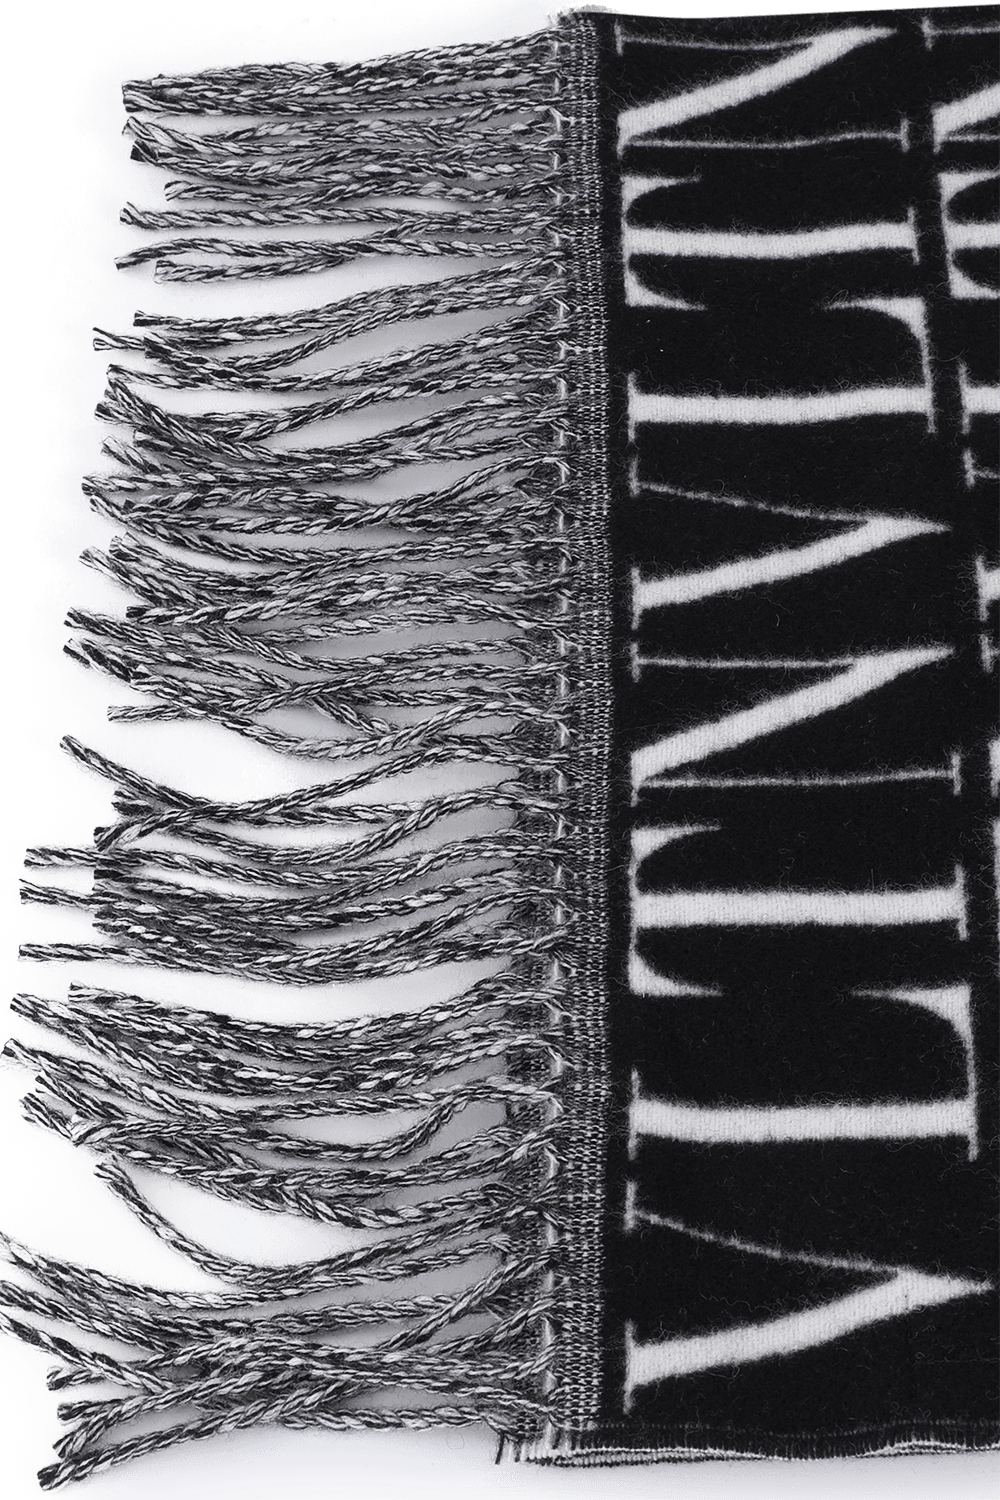 צעיף לוגומאני מצמר בגווני שחור ולבן VALENTINO GARAVANI